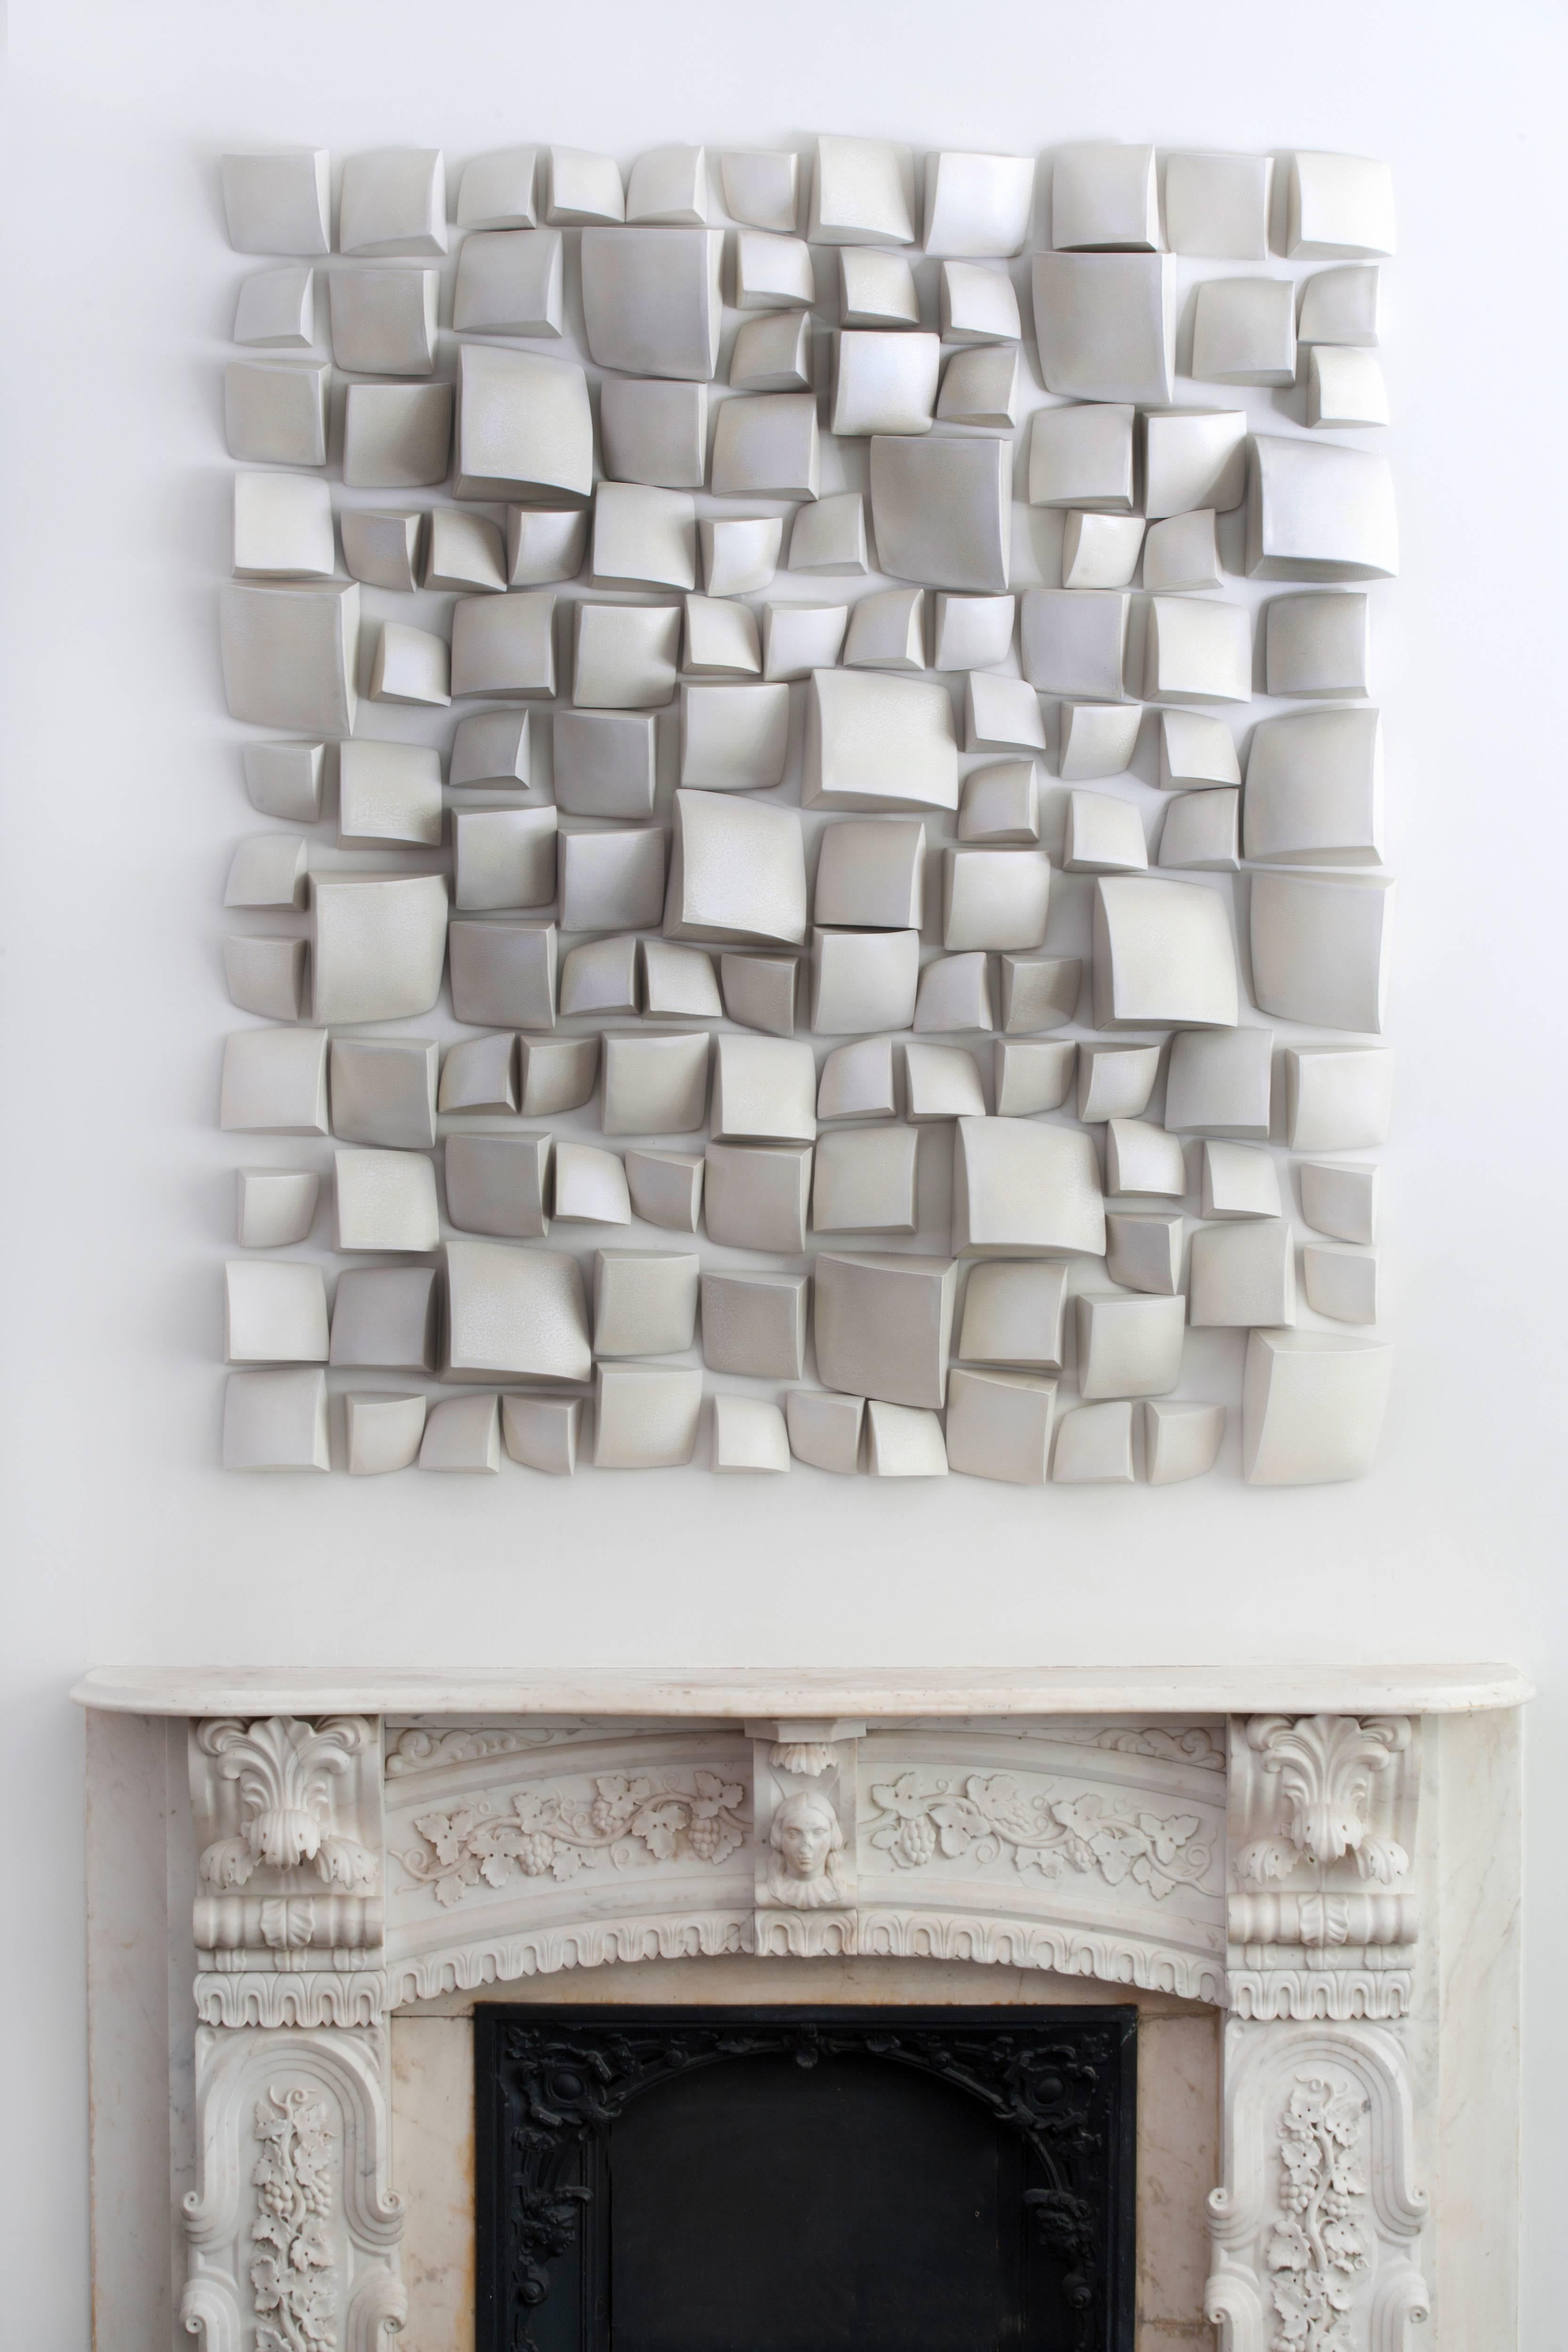 Maren Kloppmann (German b.1962)
Wall pillow field deconstructed III, 2016
Ceramic, white textured glaze
Measures: 66